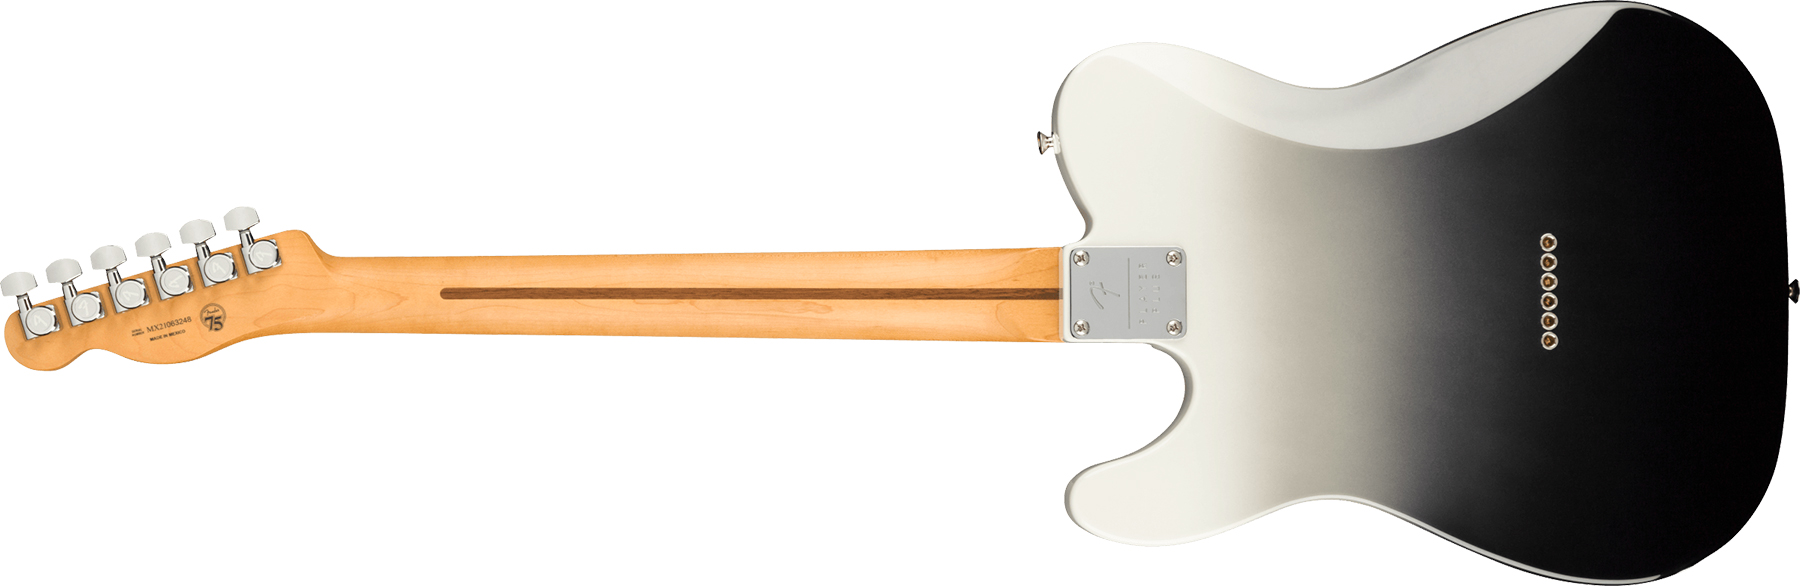 Fender Tele Player Plus Mex 2s Ht Pf - Silver Smoke - Televorm elektrische gitaar - Variation 1